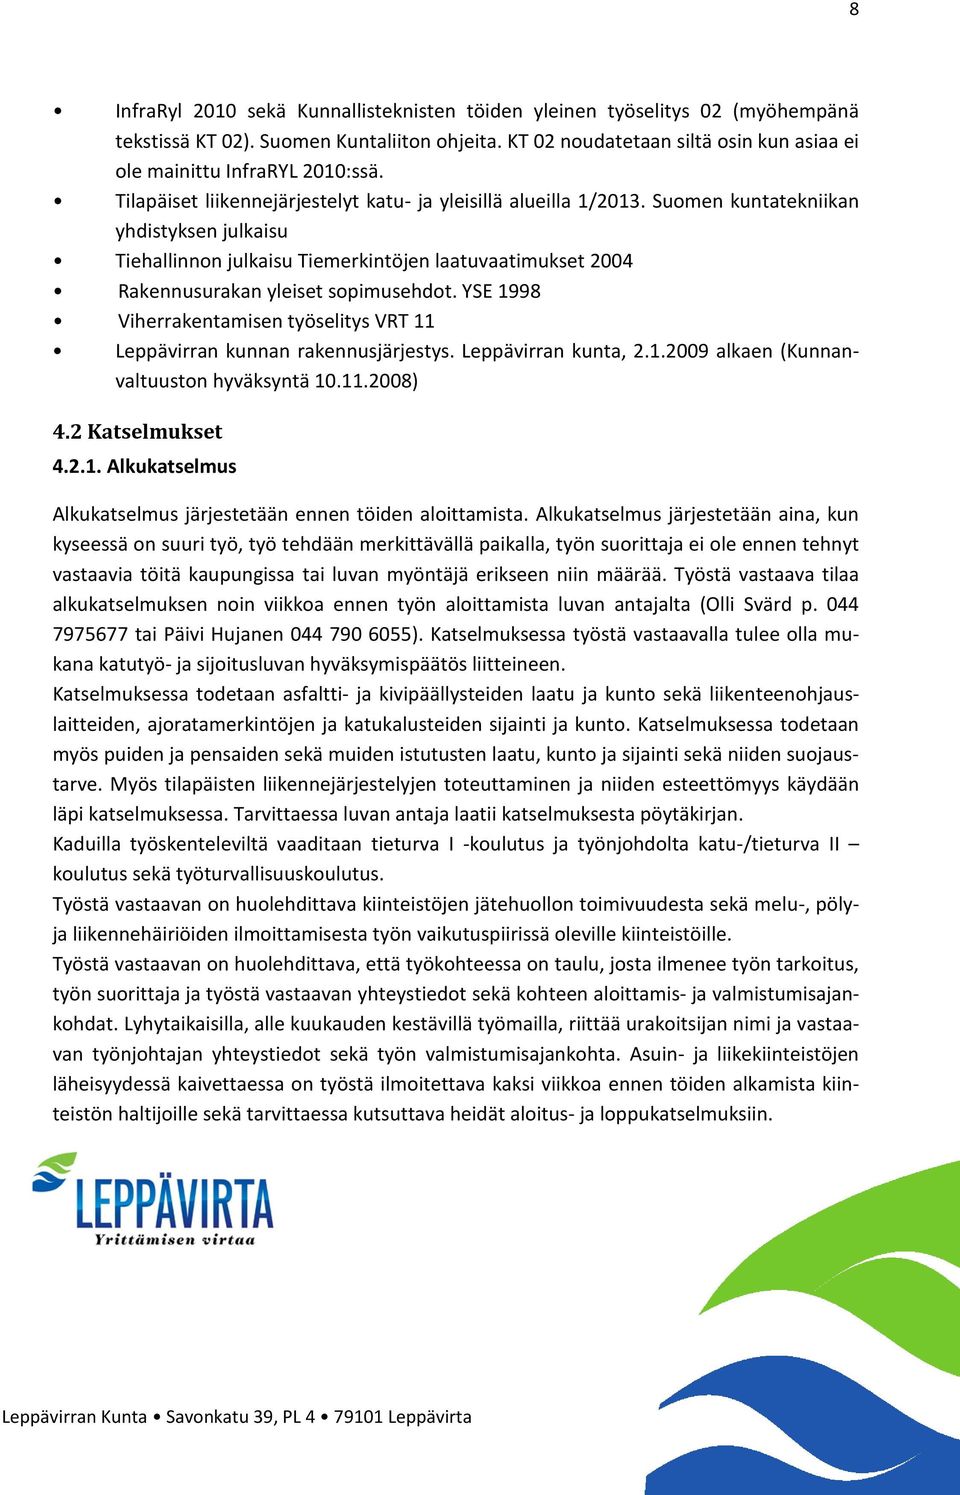 Suomen kuntatekniikan yhdistyksen julkaisu Tiehallinnon julkaisu Tiemerkintöjen laatuvaatimukset 2004 Rakennusurakan yleiset sopimusehdot.